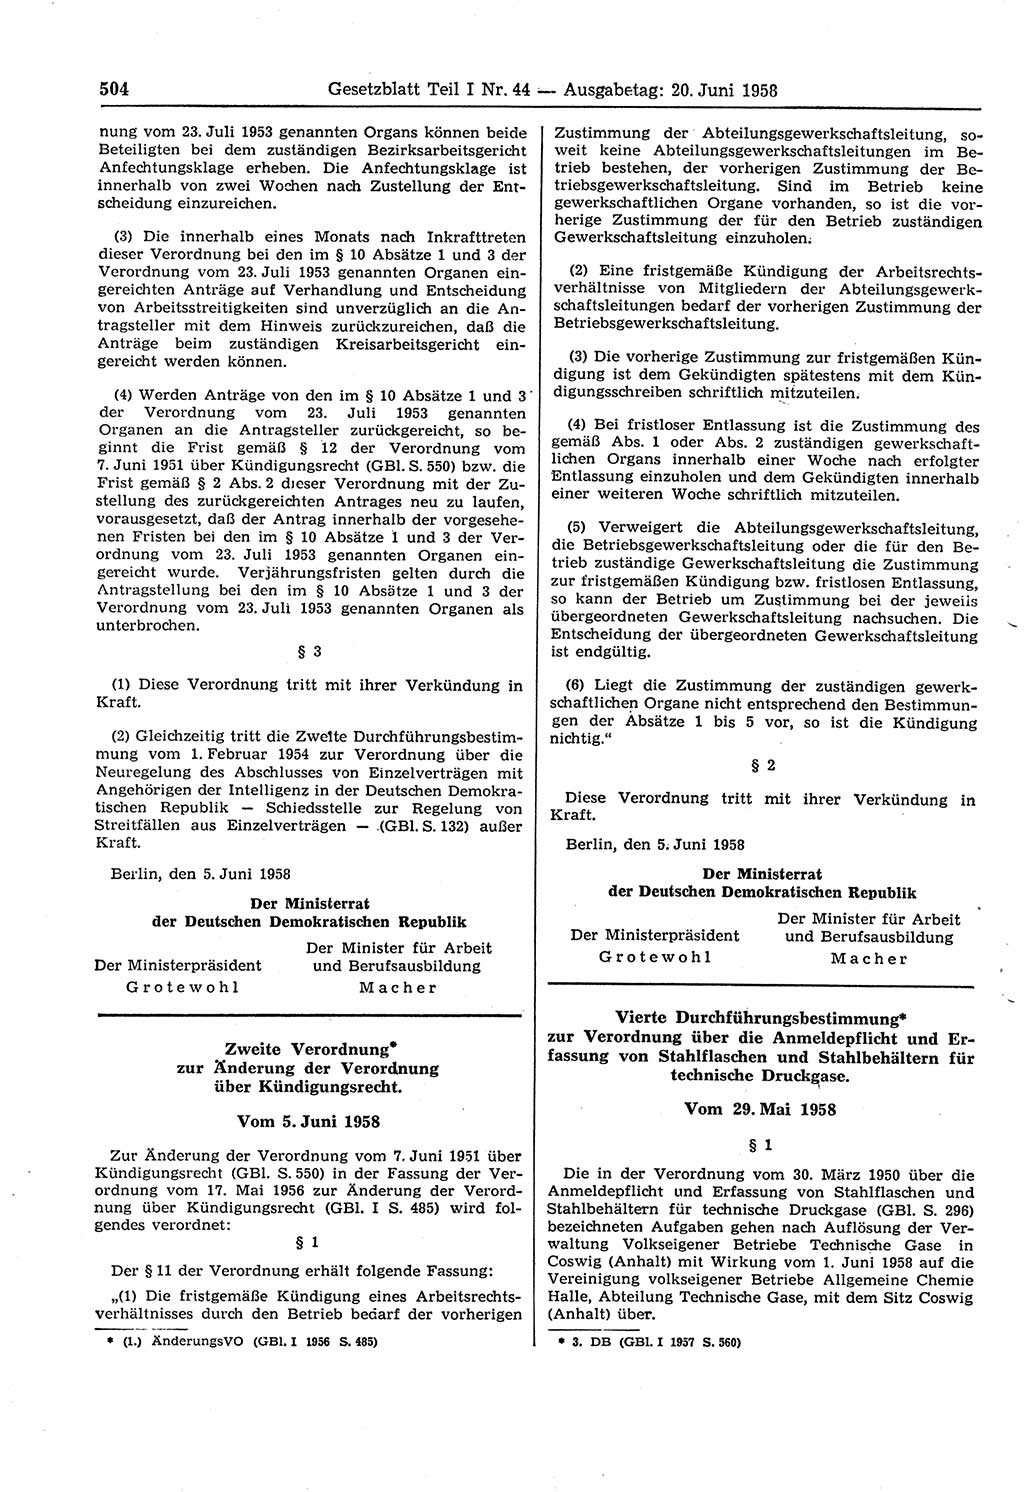 Gesetzblatt (GBl.) der Deutschen Demokratischen Republik (DDR) Teil Ⅰ 1958, Seite 504 (GBl. DDR Ⅰ 1958, S. 504)